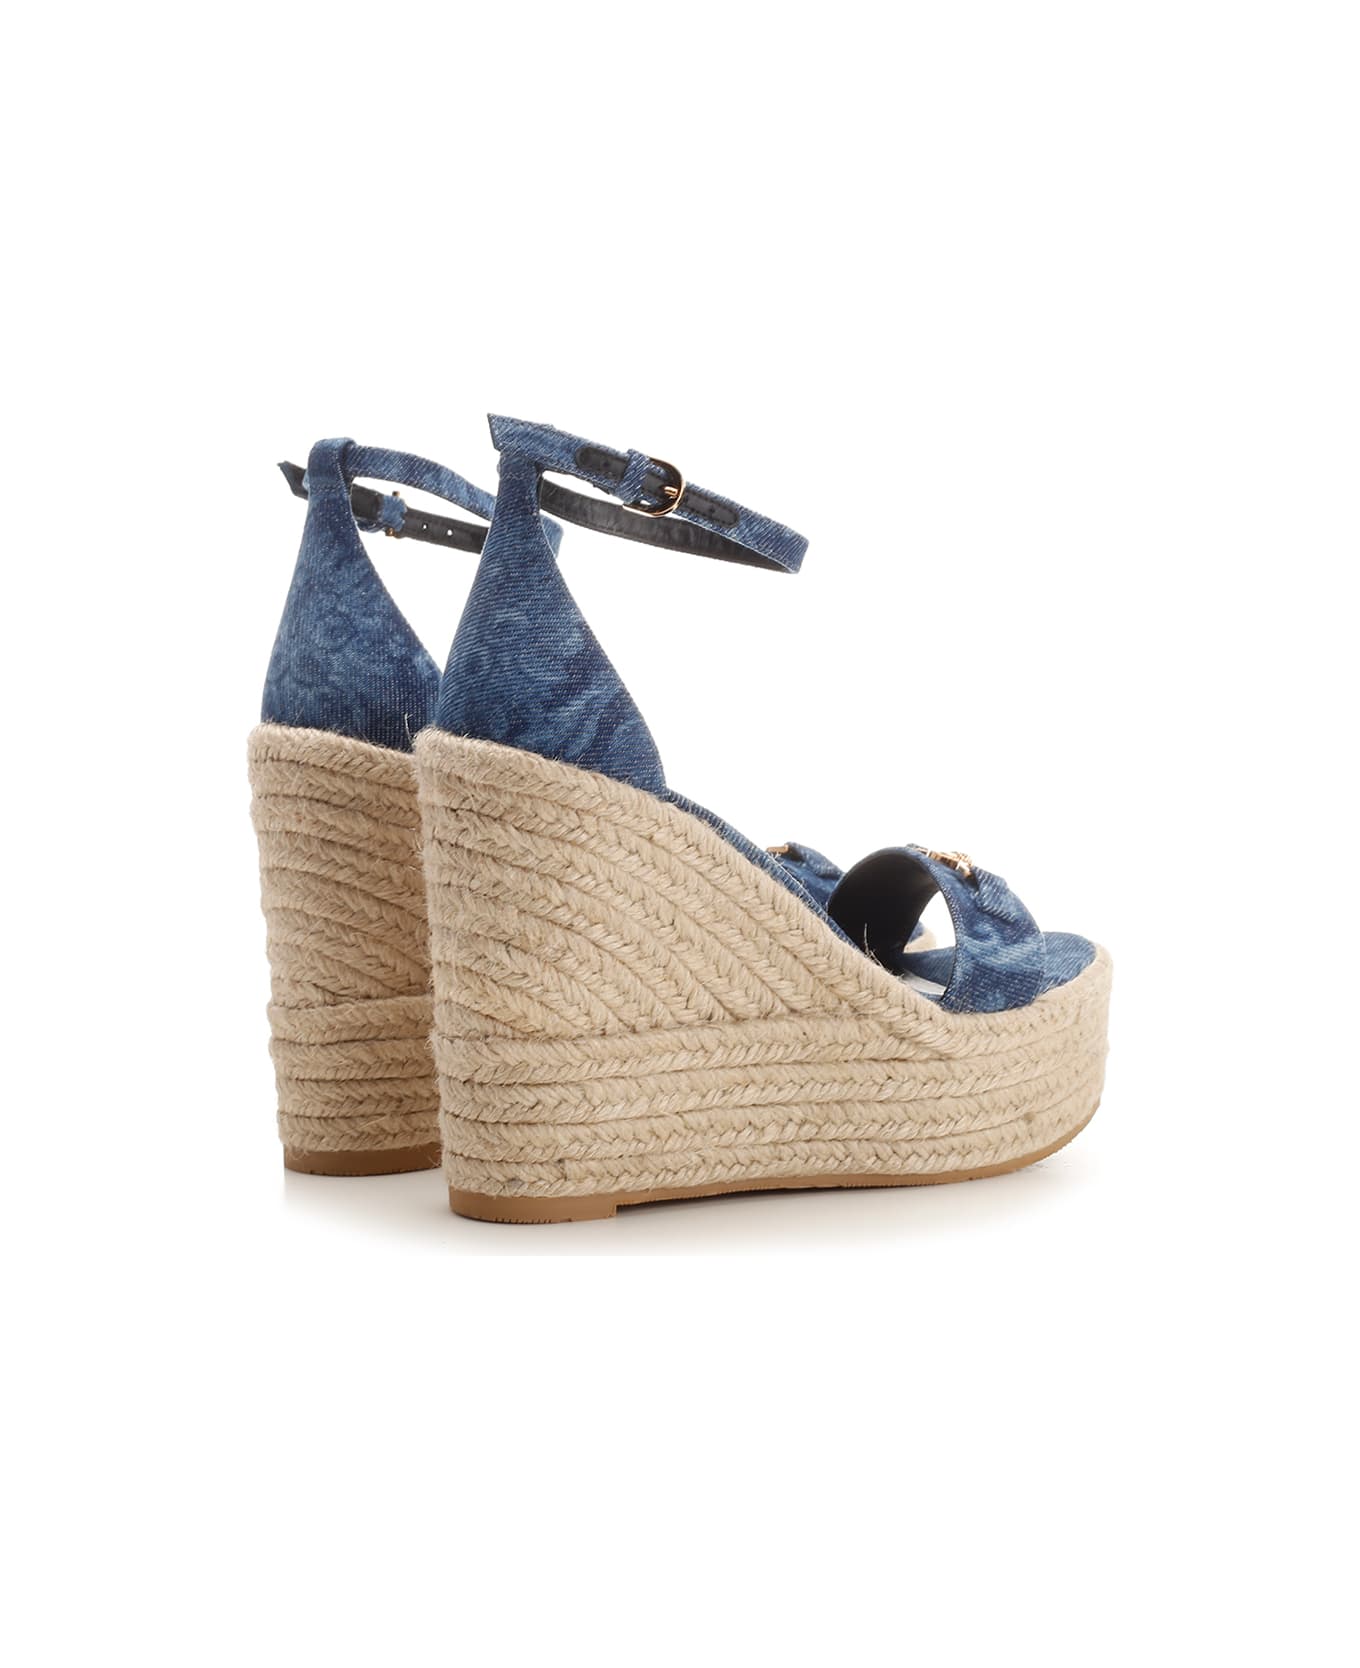 Versace Straw Wedge Sandals - BLUE